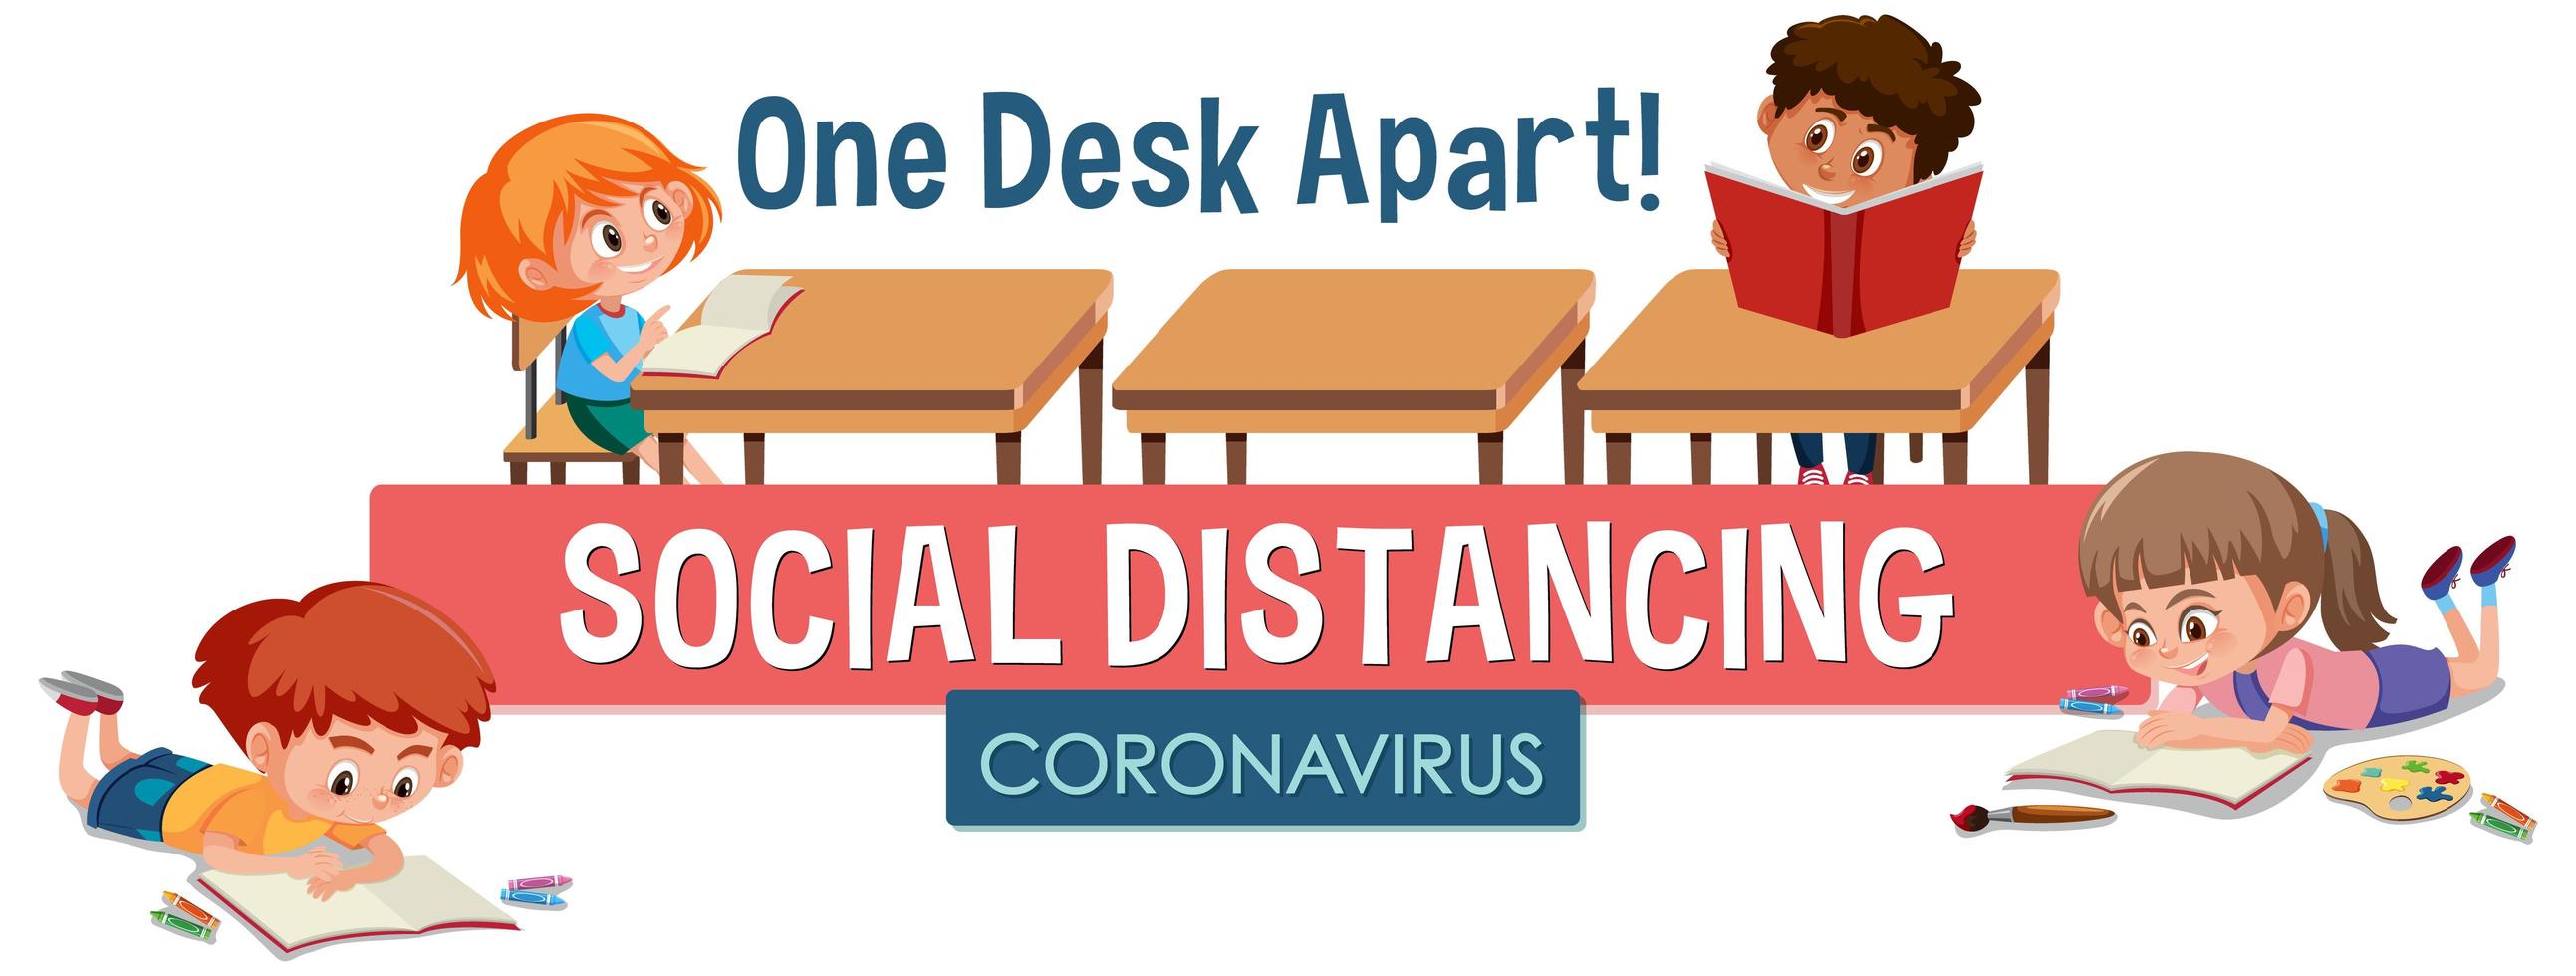 coronavirus posterontwerp met kinderen en woord sociale afstand zitten een bureau uit elkaar vector